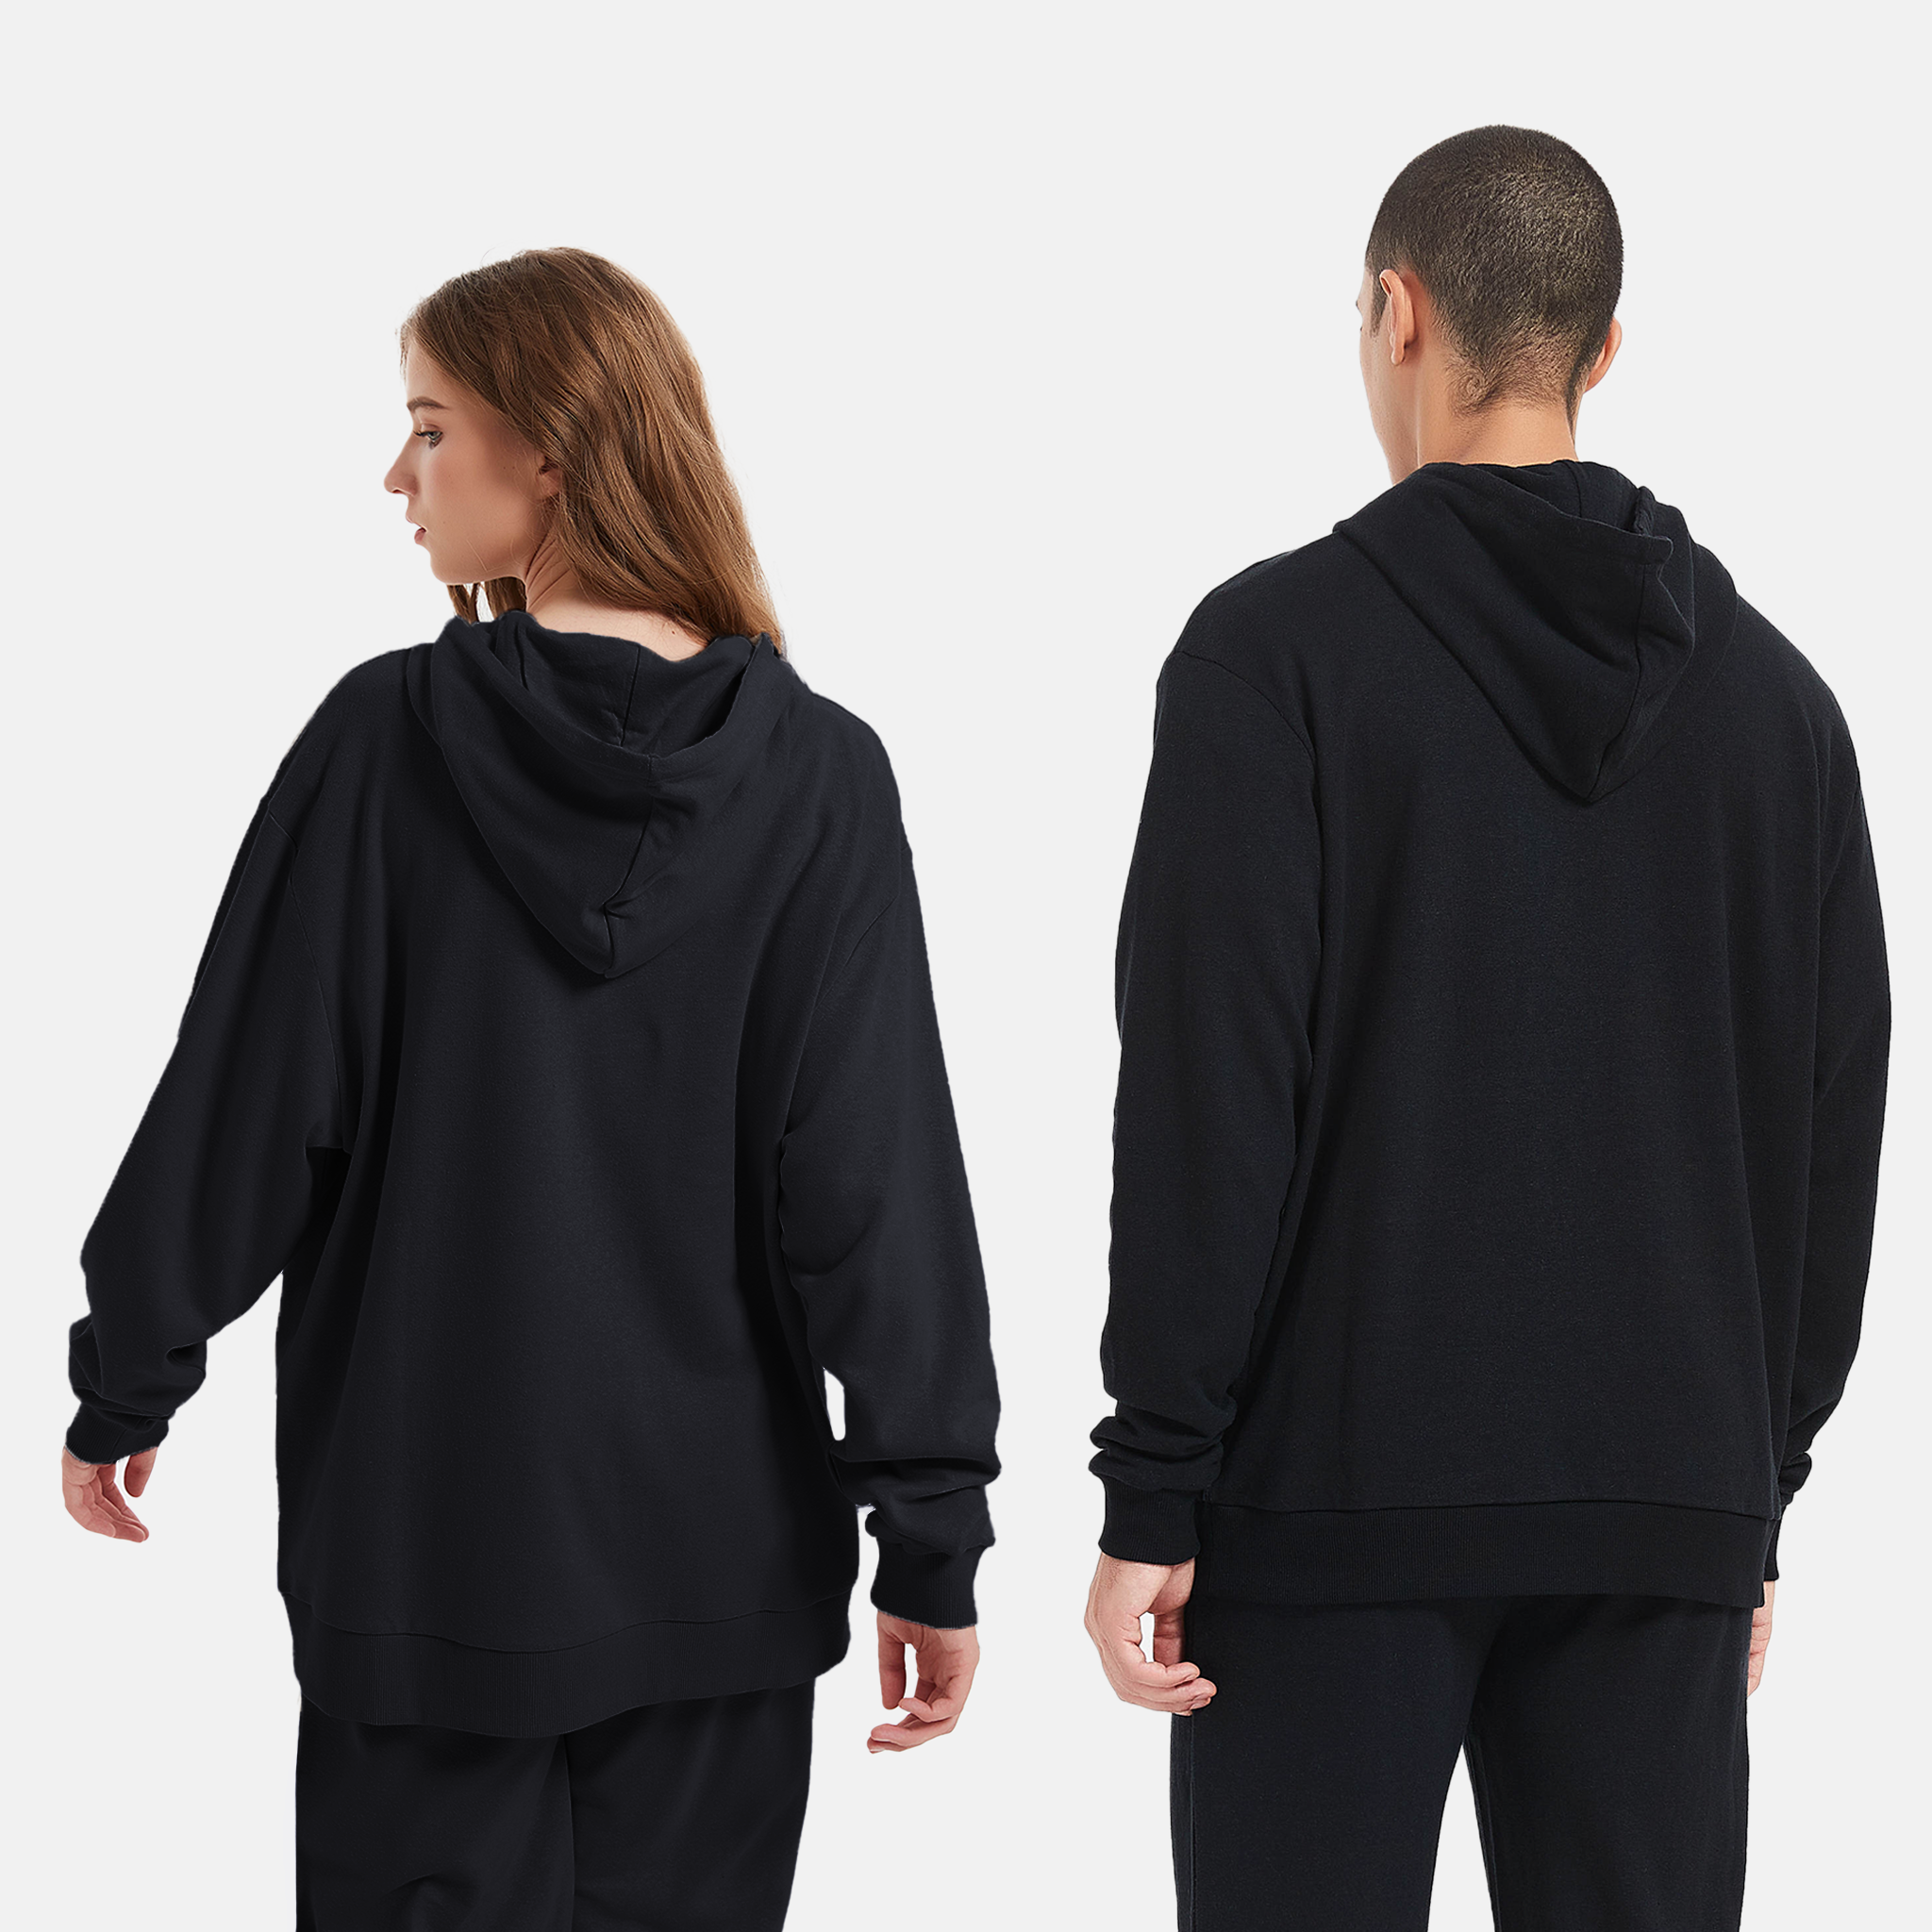 Eco-friendly black hoodie, stylish and sustainable clothing, Unisex